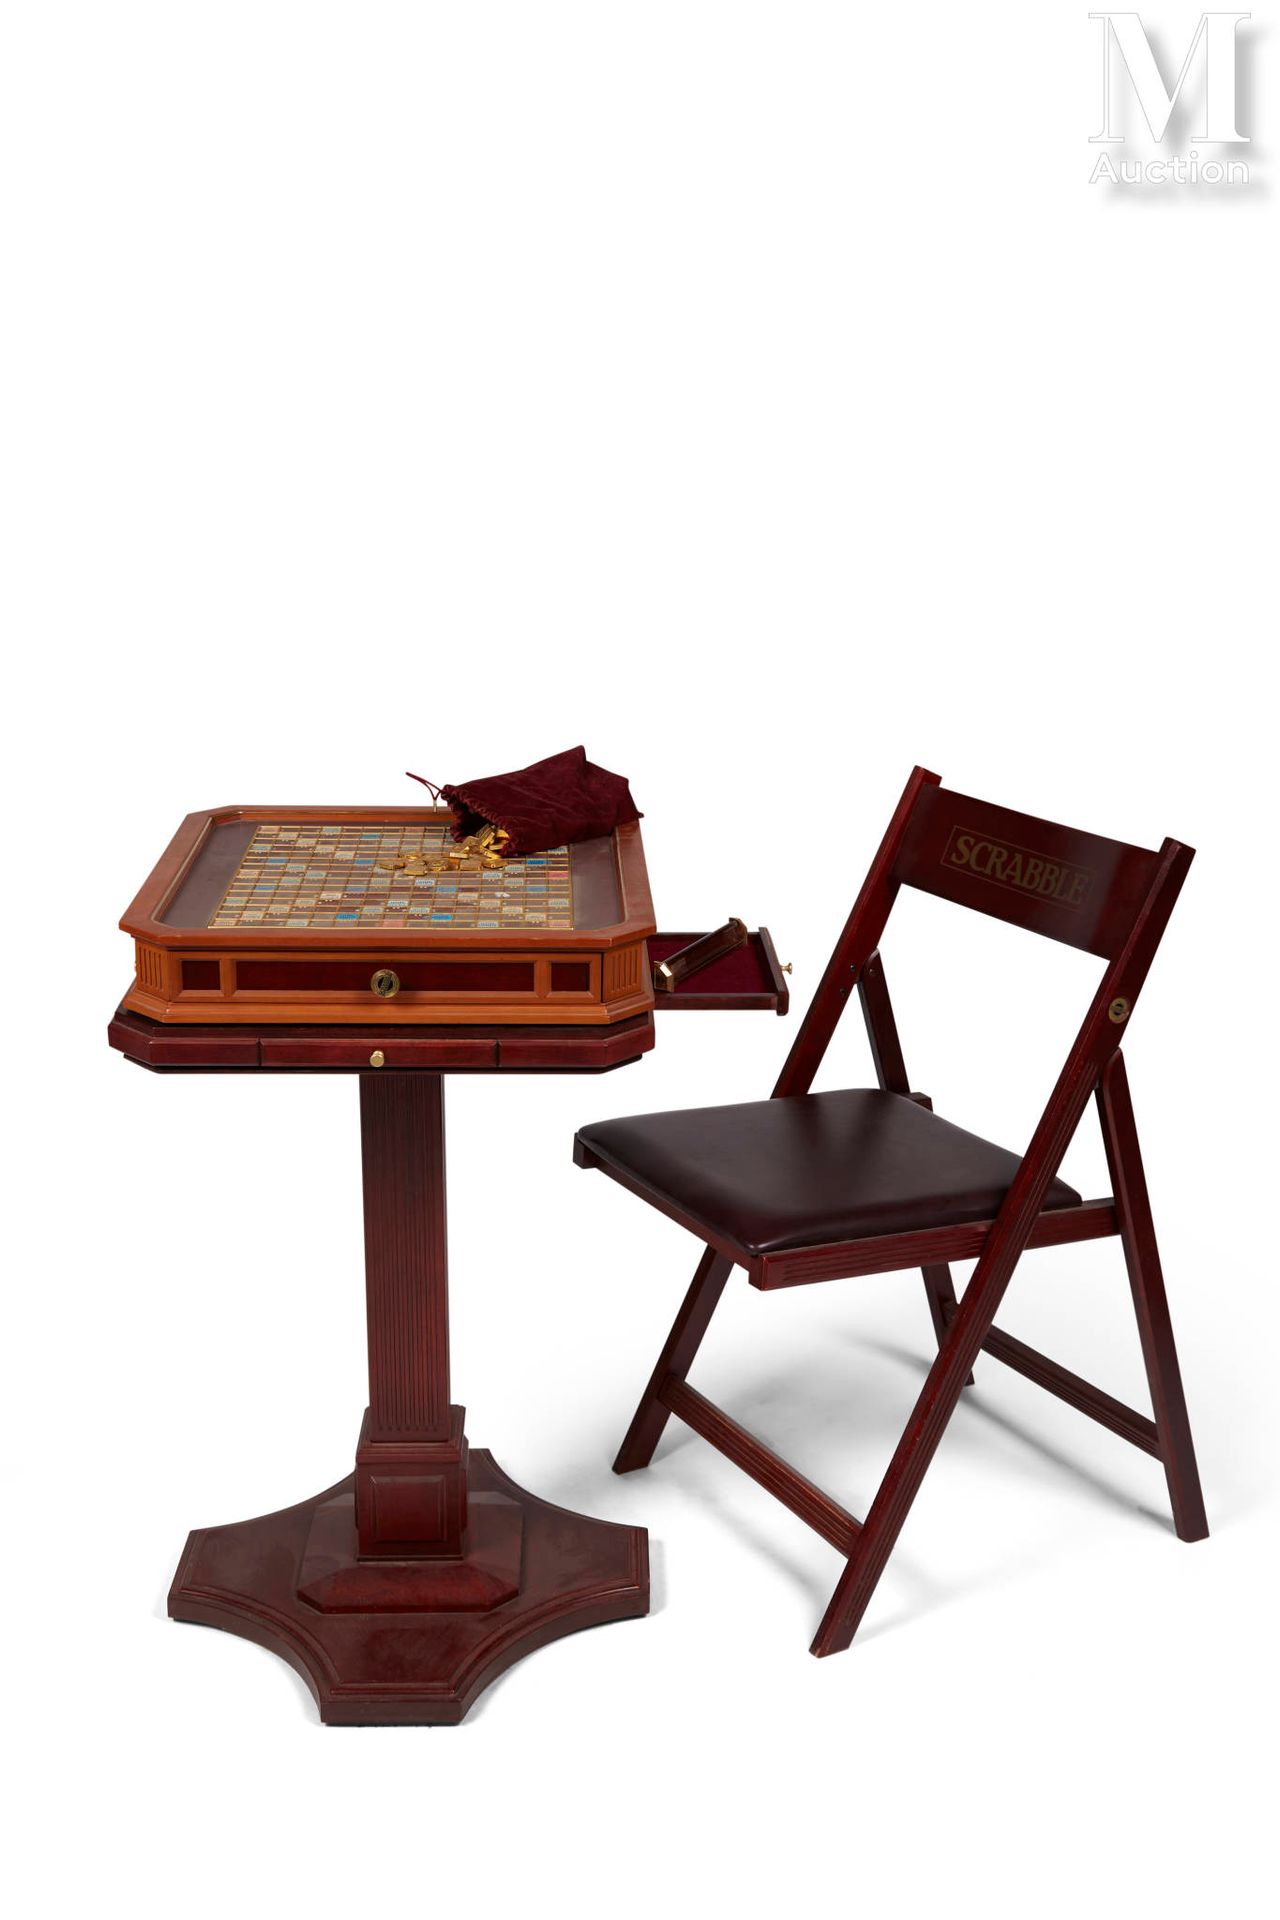 En bois, composé deux chaises pliantes, une table ainsi …